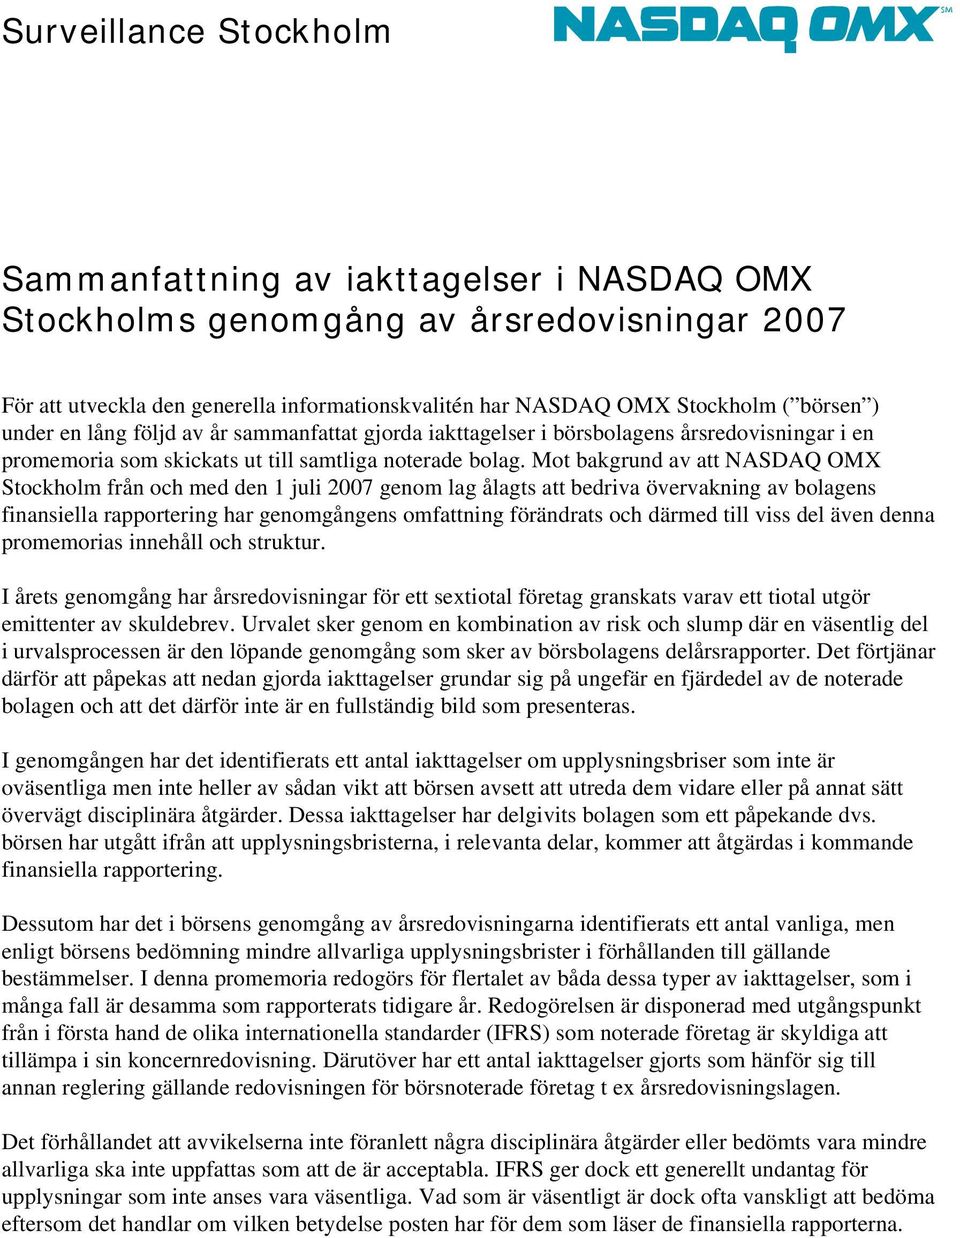 Mot bakgrund av att NASDAQ OMX Stockholm från och med den 1 juli 2007 genom lag ålagts att bedriva övervakning av bolagens finansiella rapportering har genomgångens omfattning förändrats och därmed